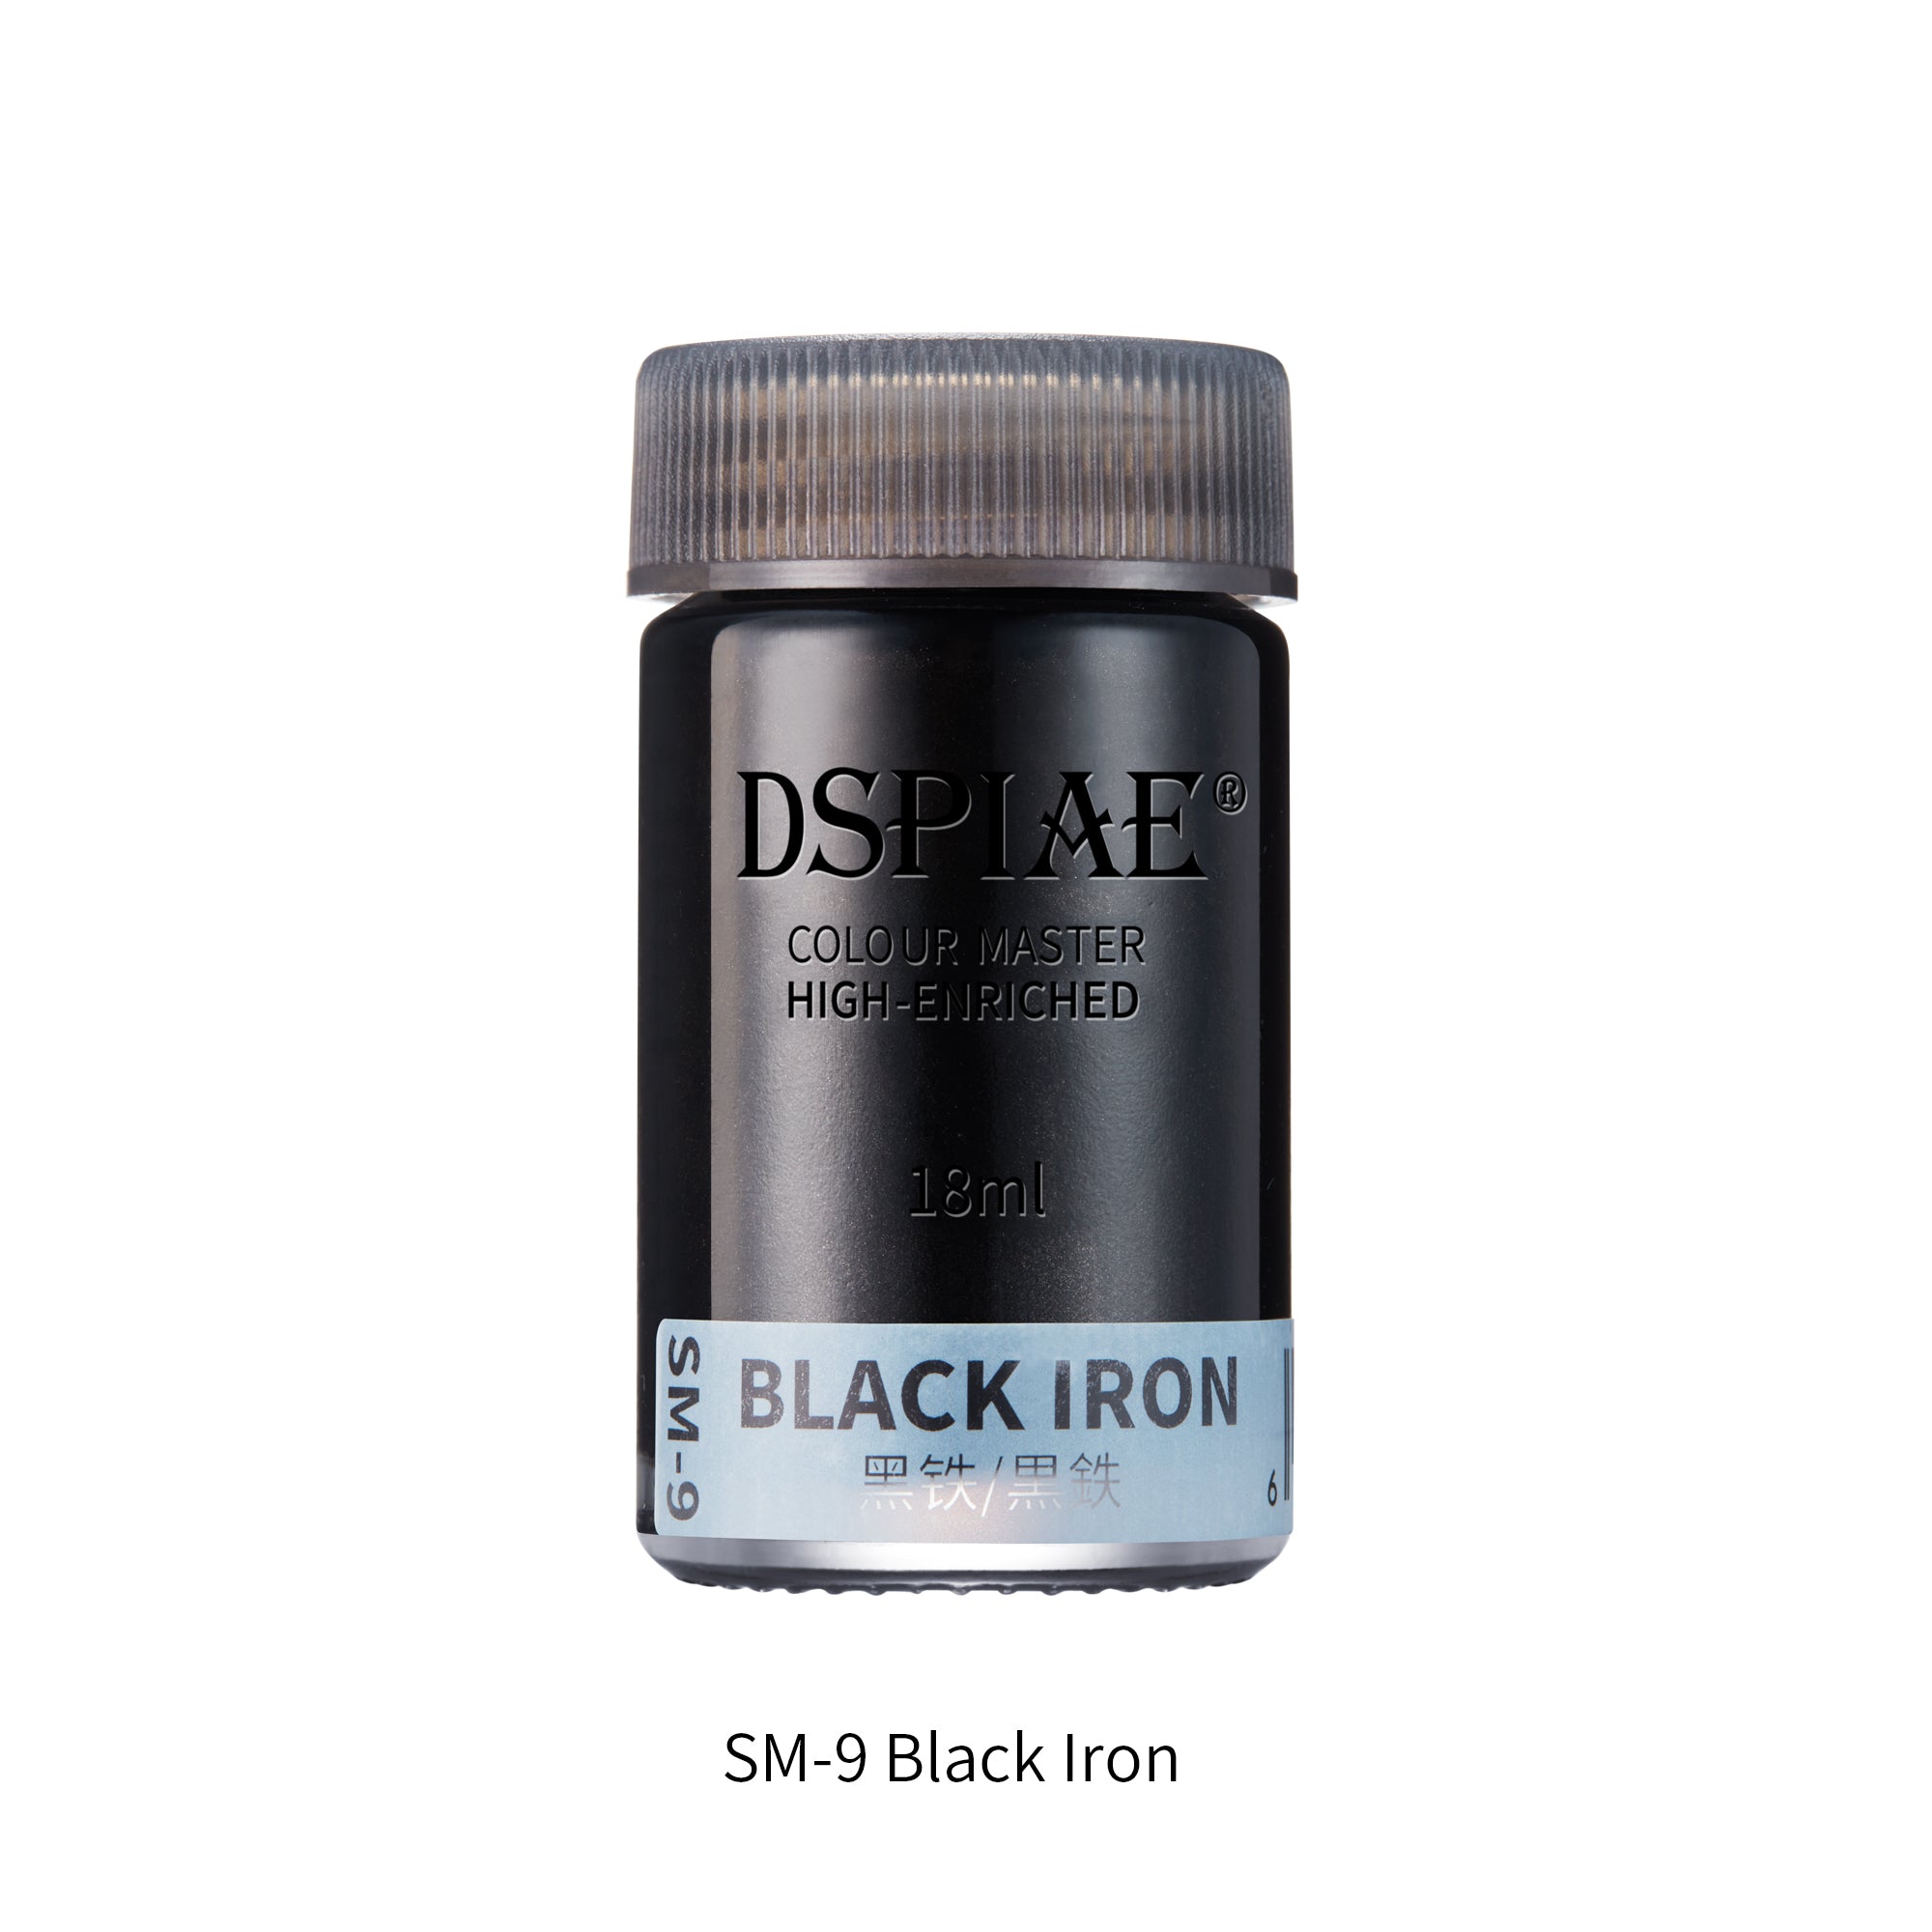 SM-9 Black Iron 18ml